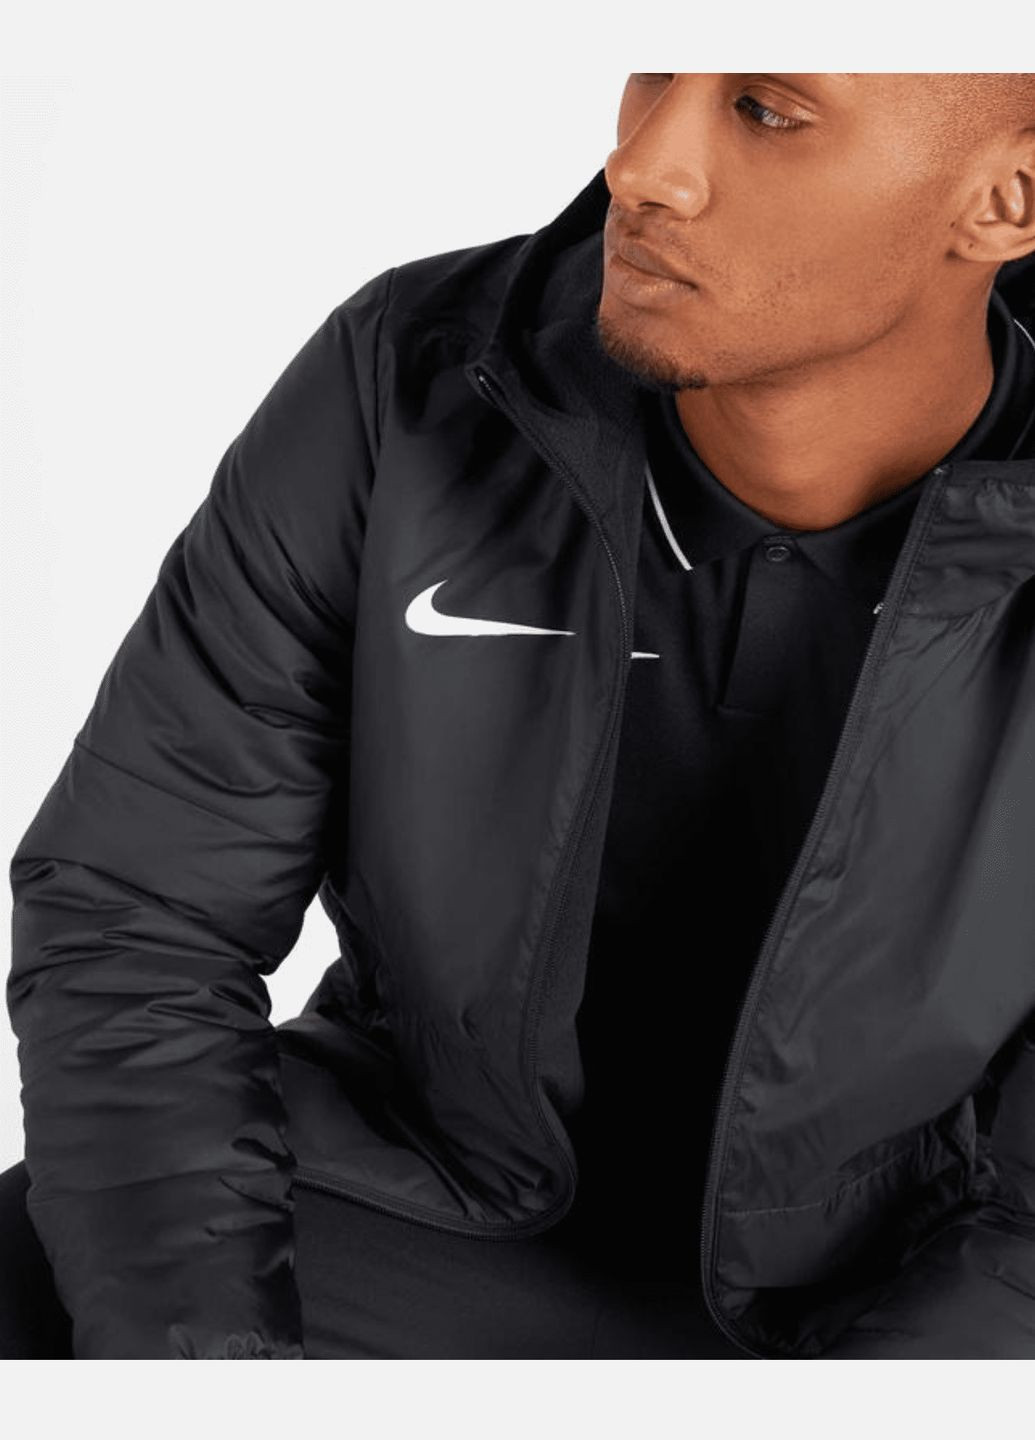 Чорна демісезонна куртка (вітровка) чоловіча fall jacket park 20 cw6157-010 весна-осінь чорна Nike